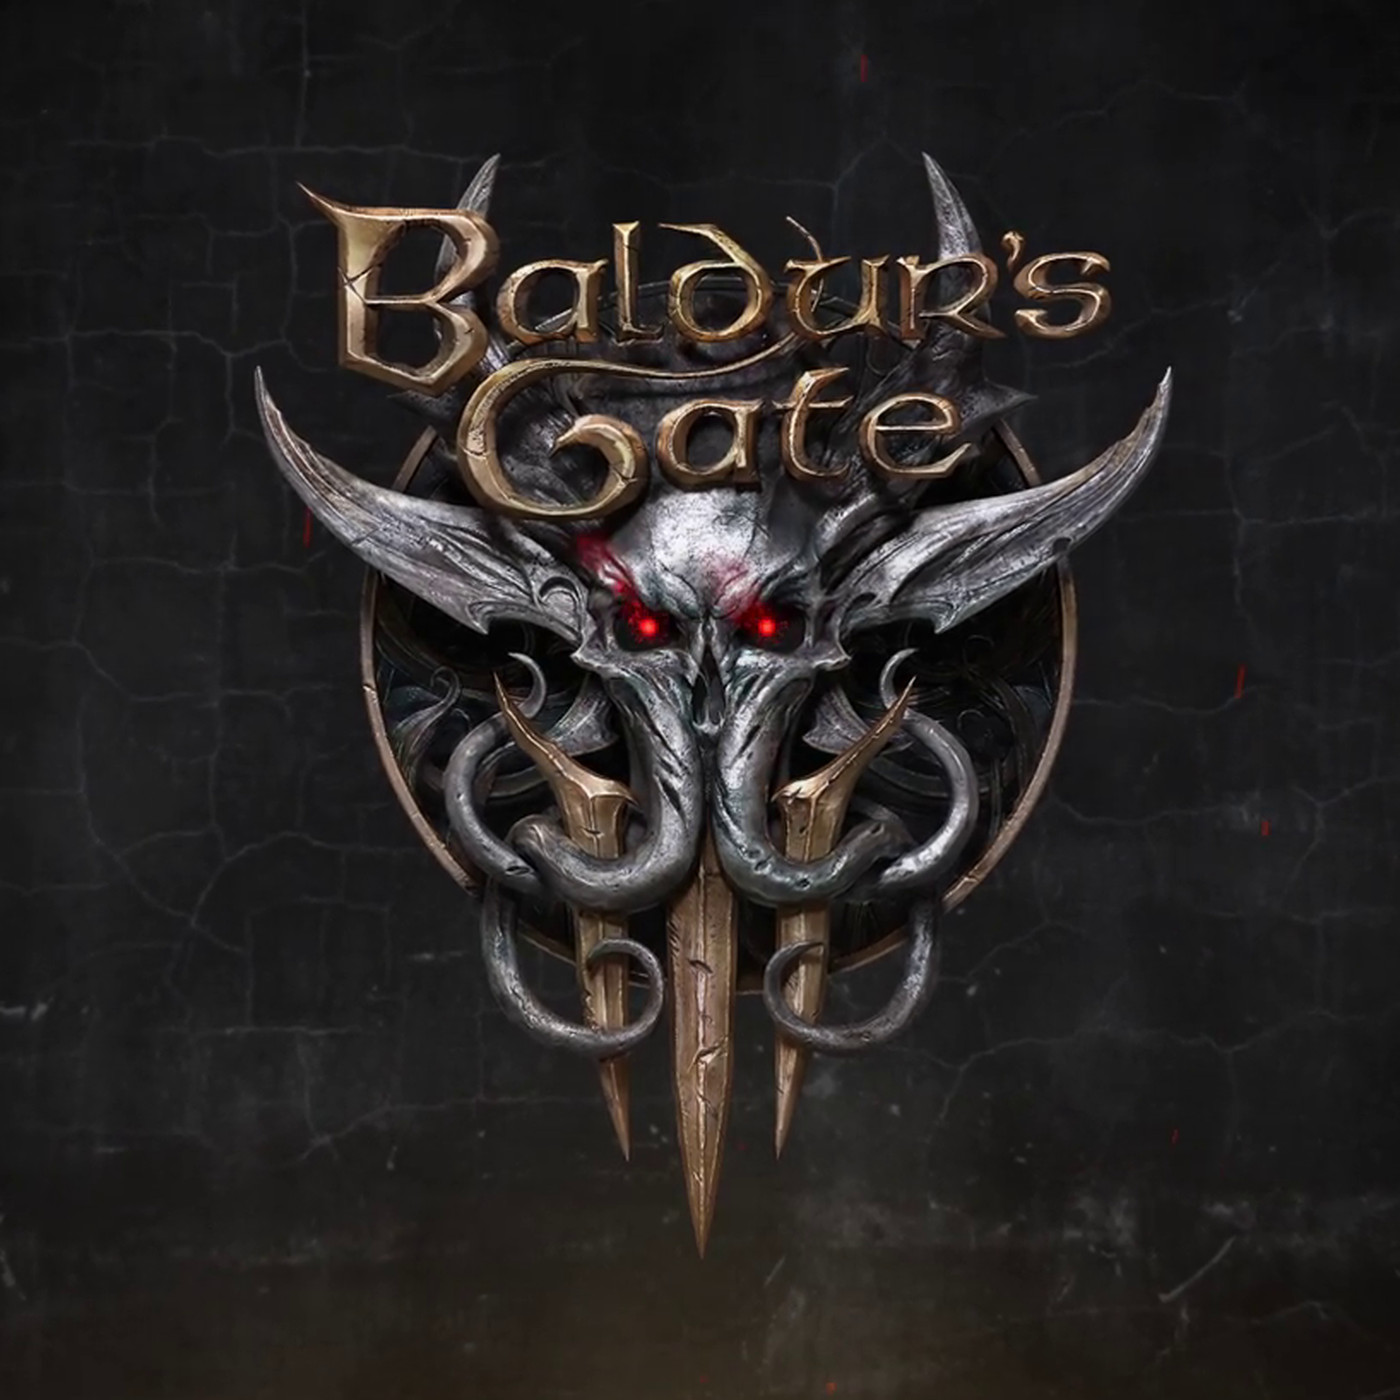 Baldur's Gate 3 - [Таблица для Cheat Engine]. Чит на бросок кубика, Ресурсы персонажа, Менеджер спавна предметов